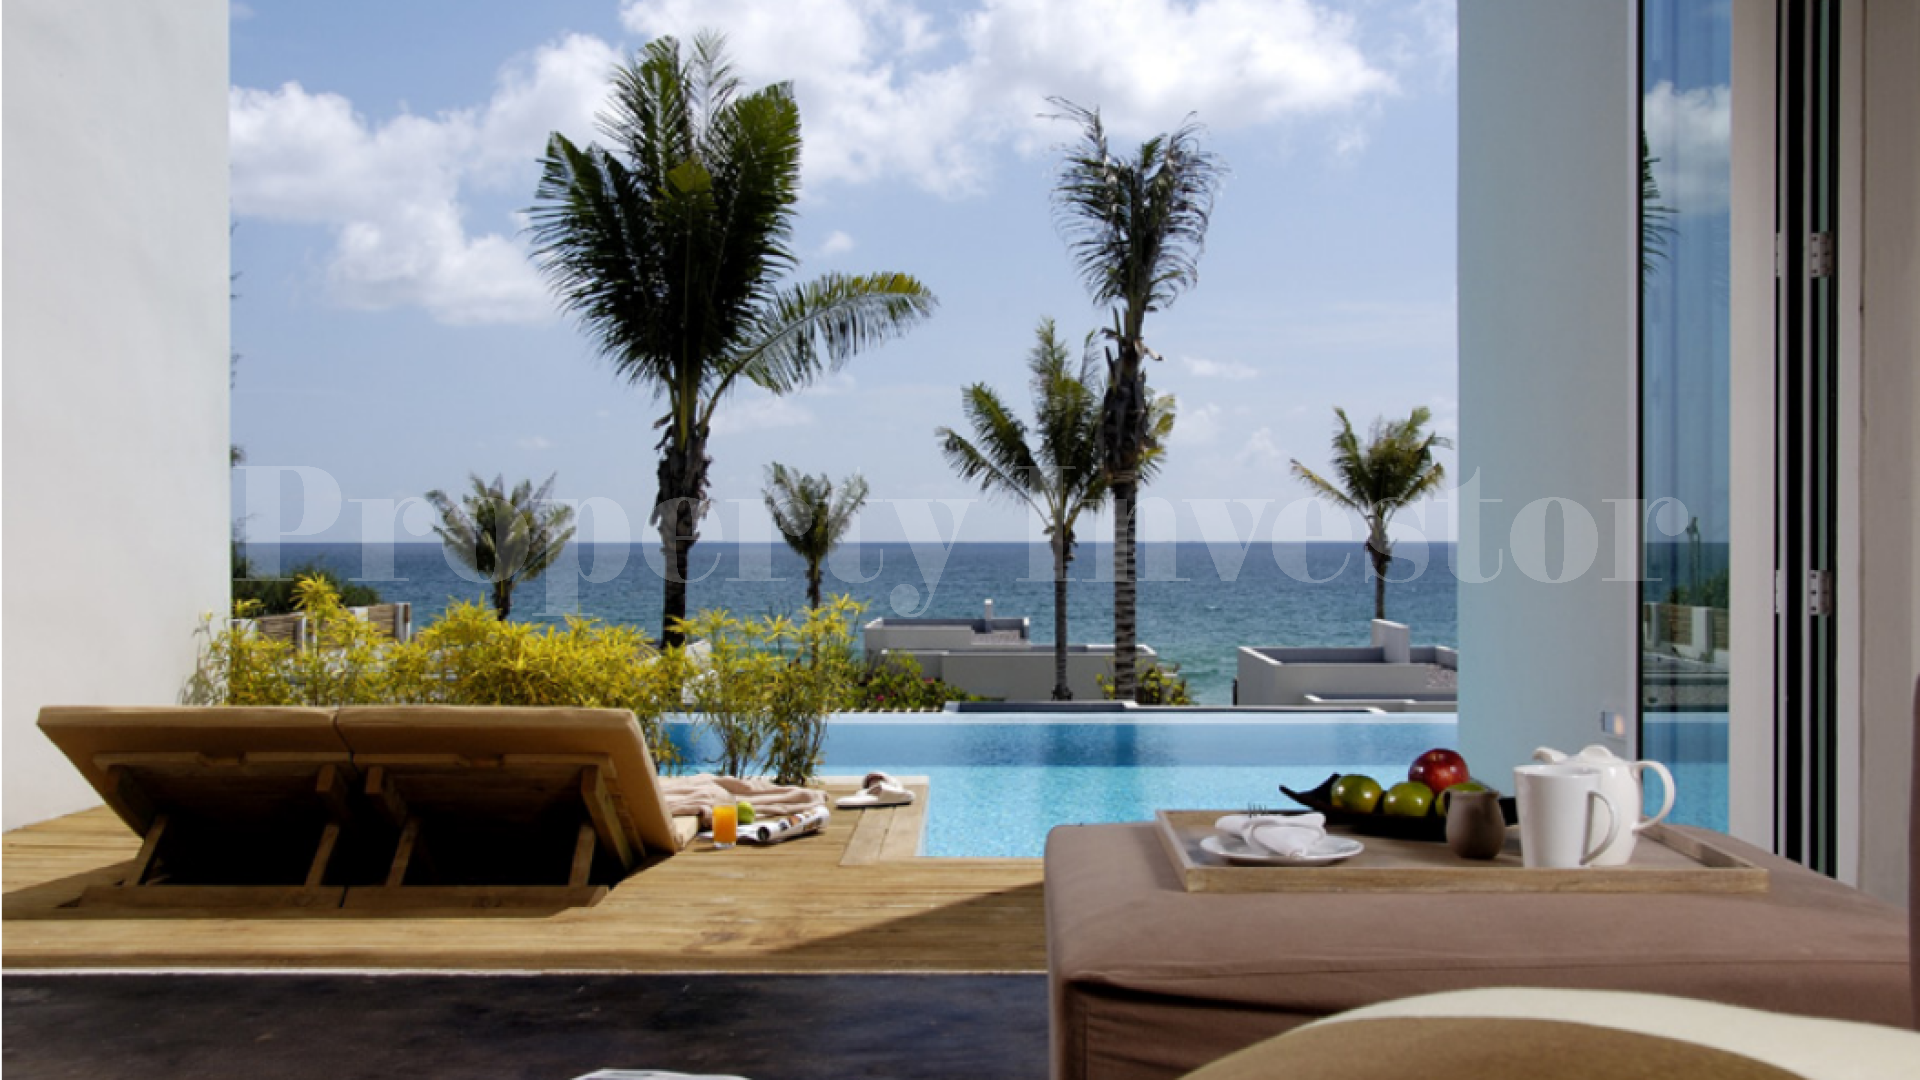 Продаются резиденции с 3 спальнями в апарт-отеле на Багамах (Residence 422)